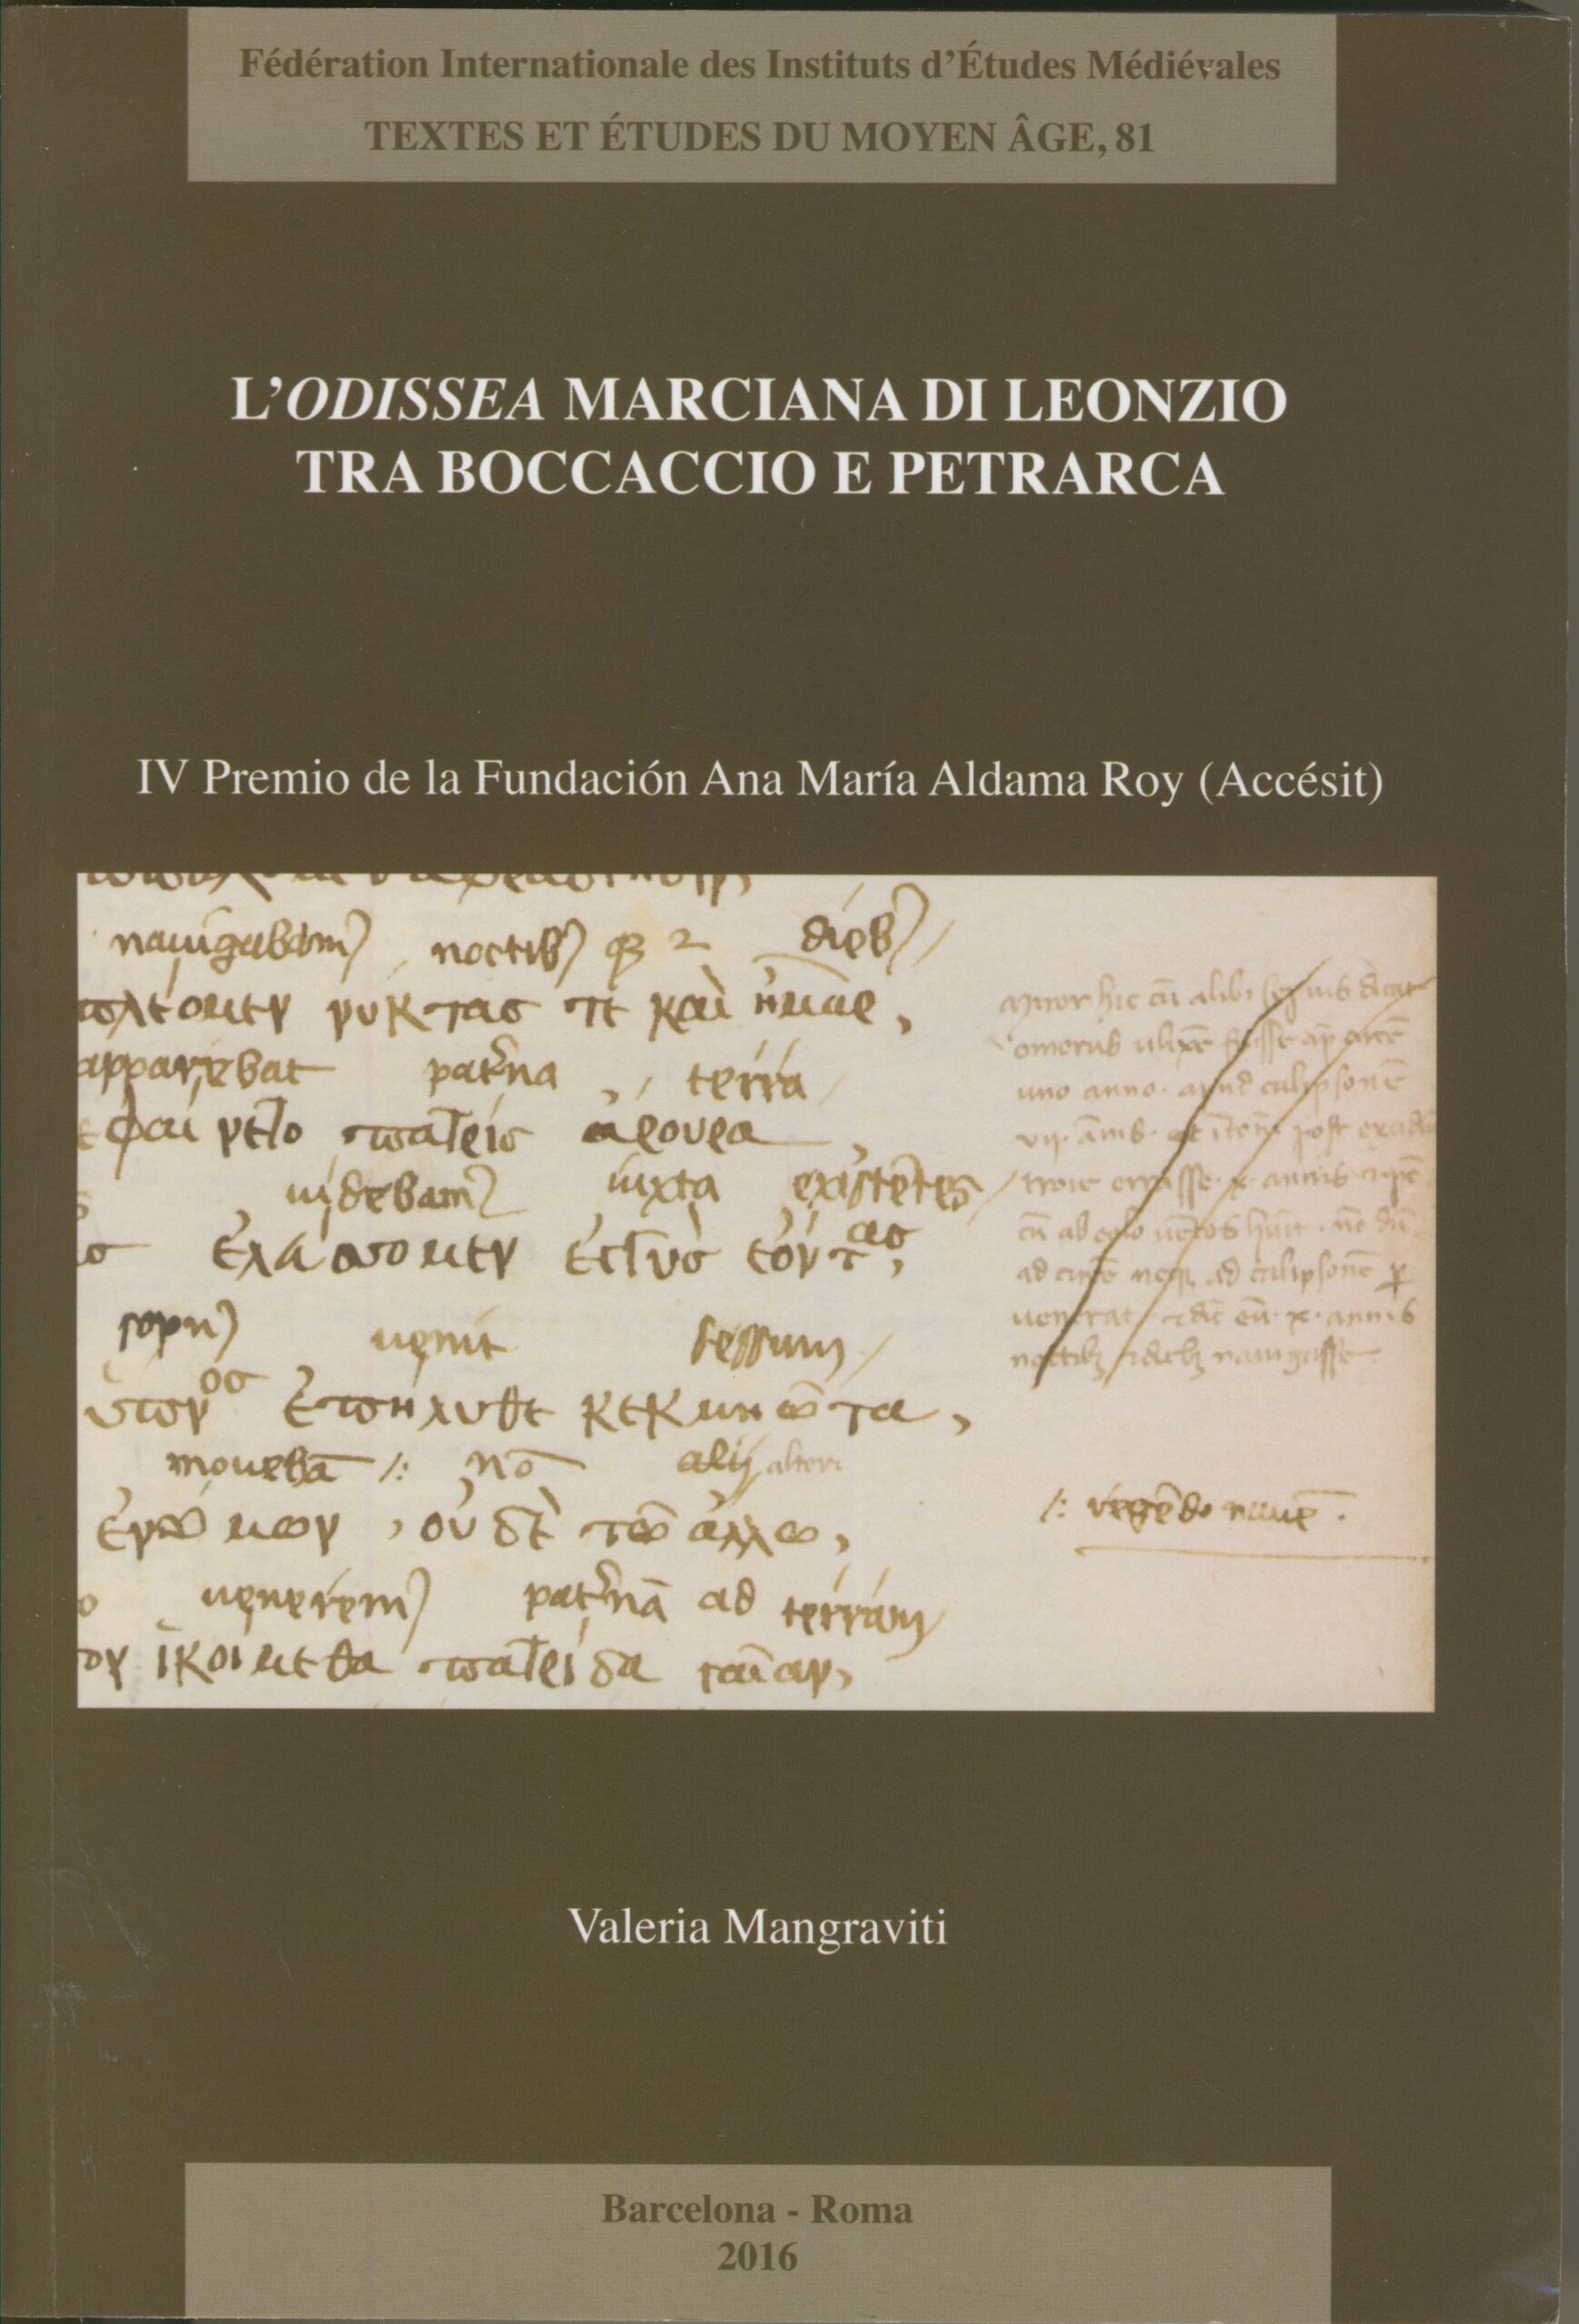 L’Odissea marciana di Leonzio tra Boccaccio e Petrarca